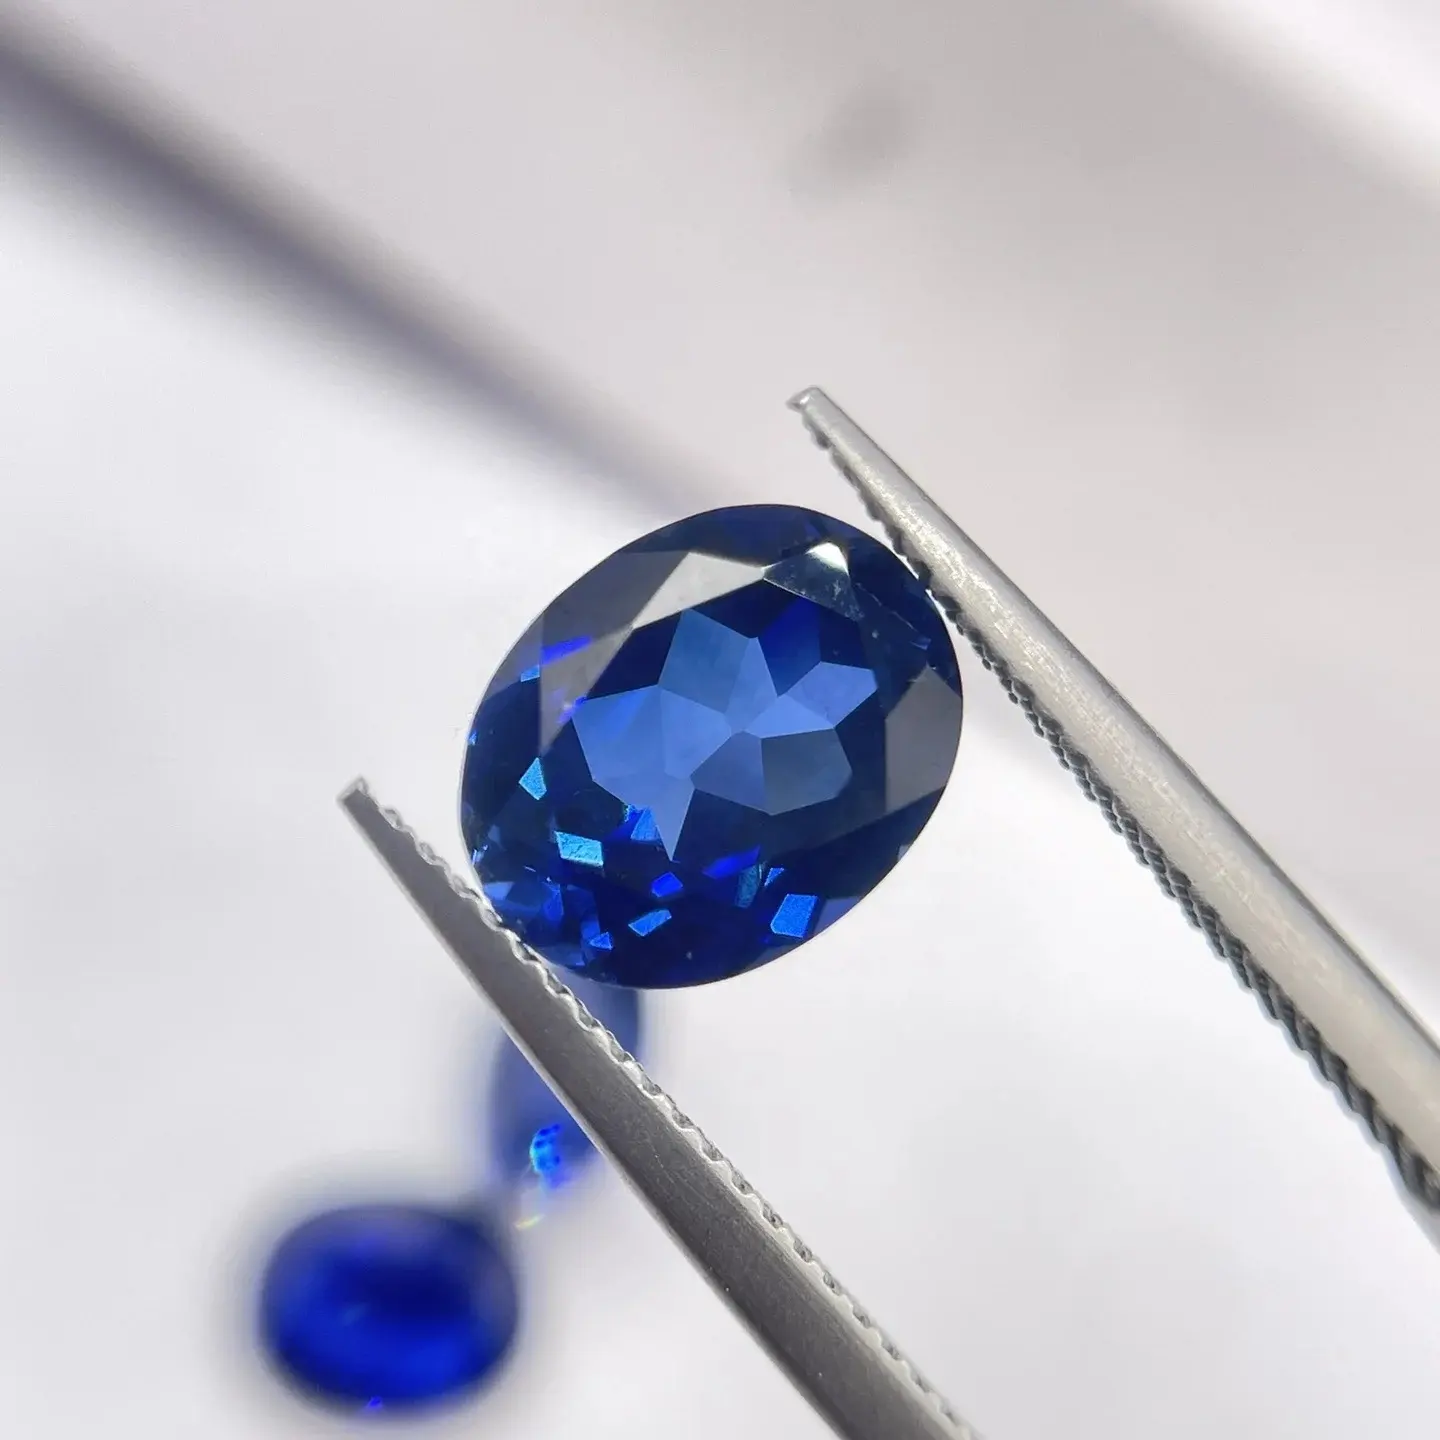 Prix de gros de pierres précieuses en vrac en stock 6*8mm, corindon de coupe ovale créé en laboratoire, saphir bleu royal